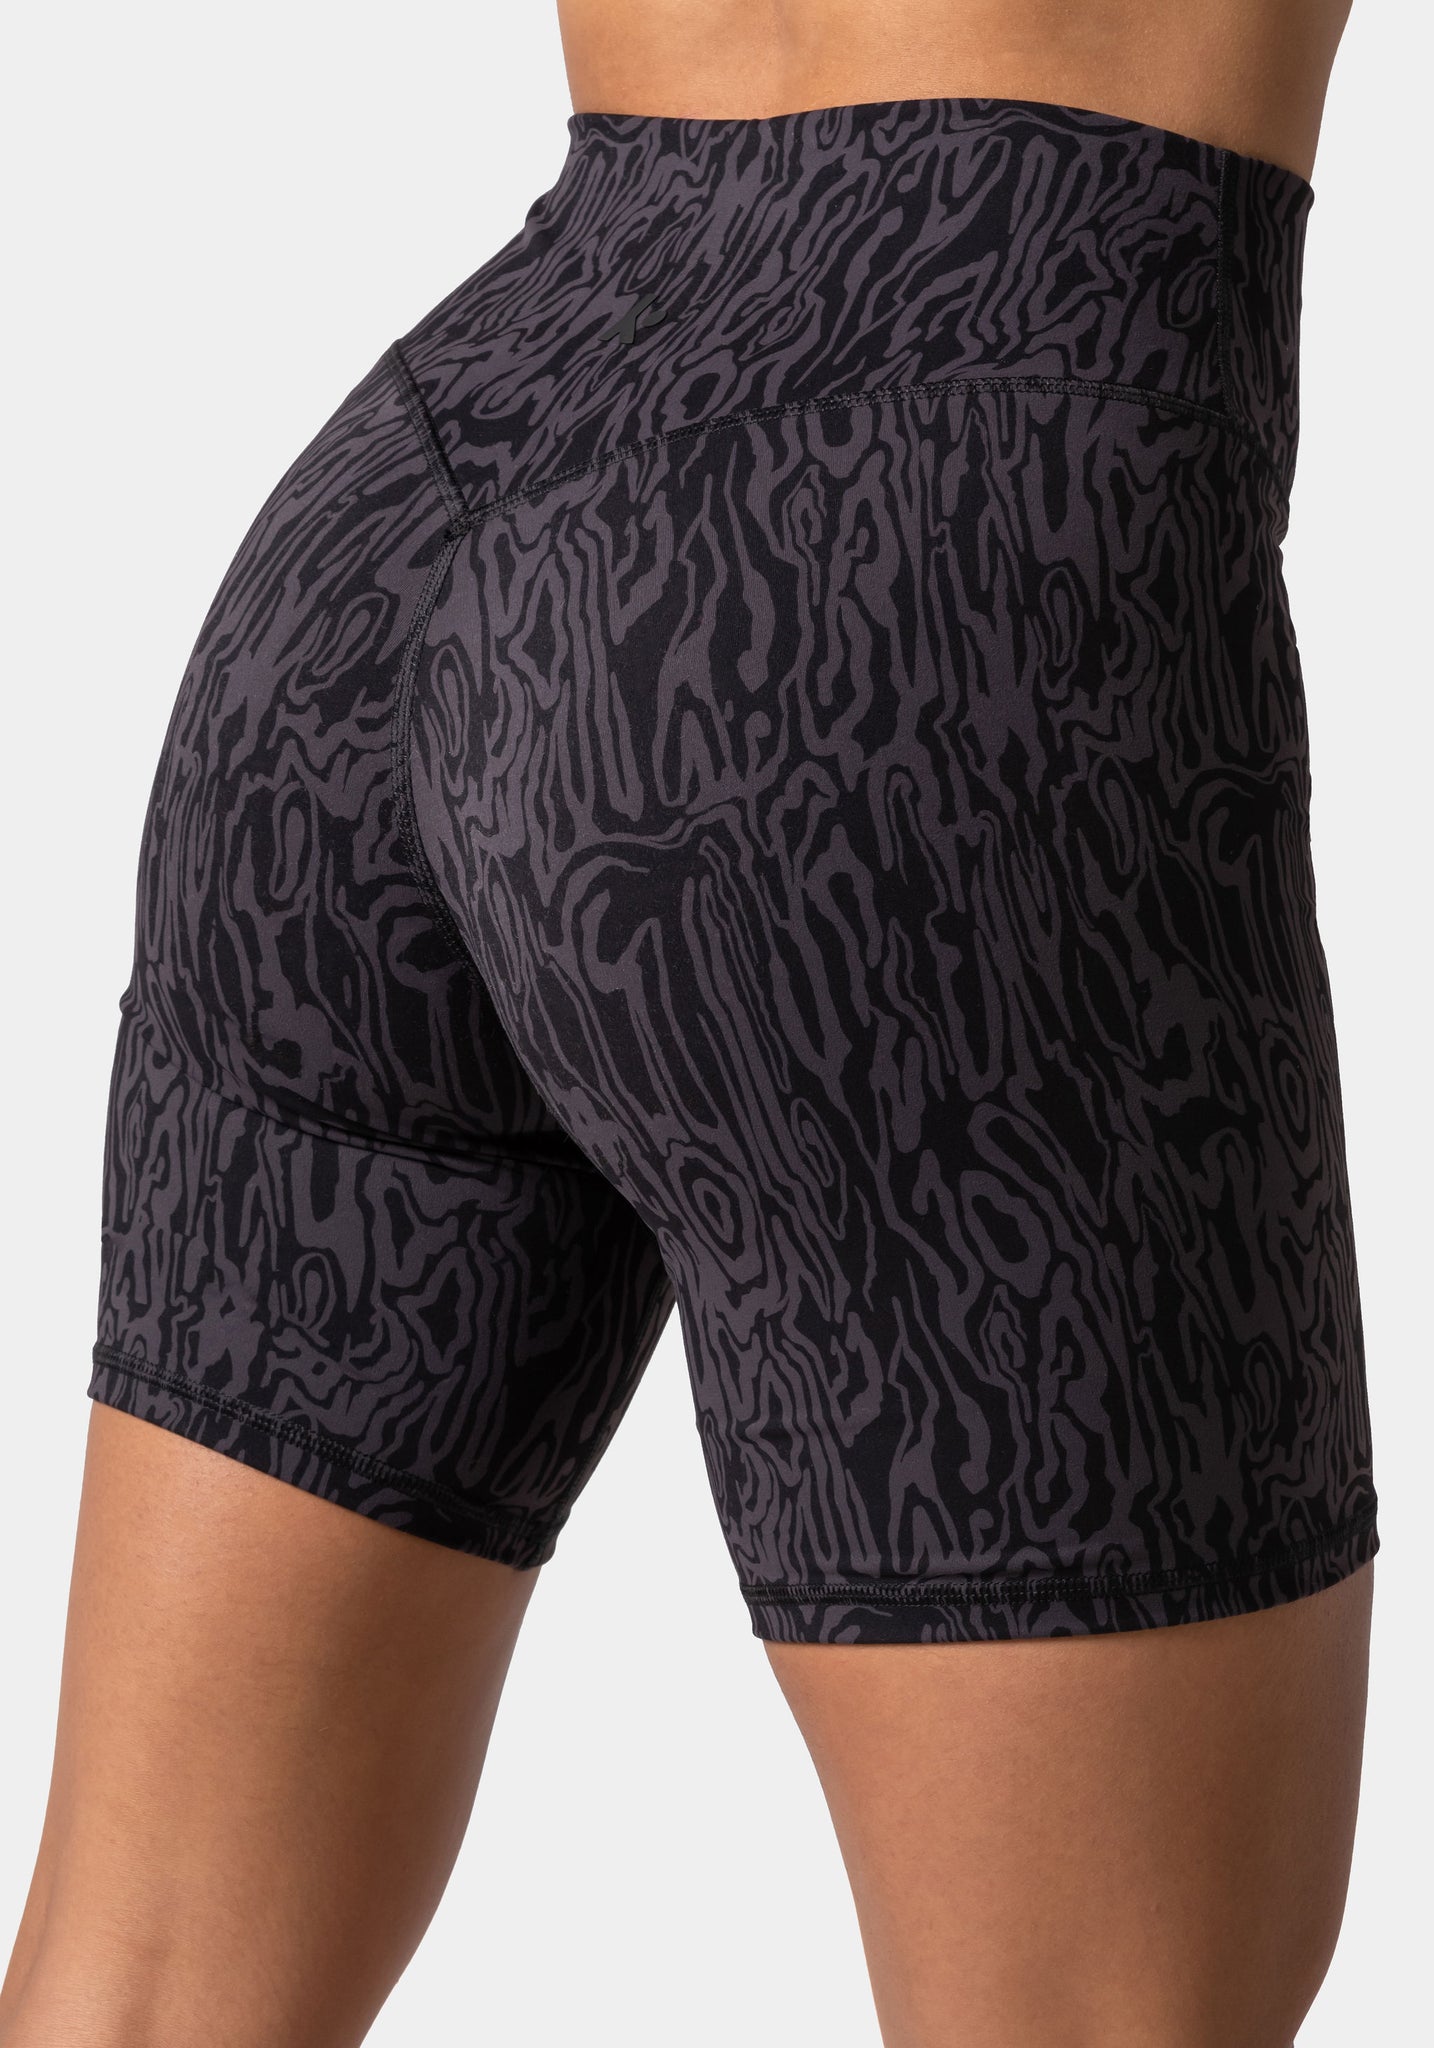 Serenity Shorts 6" - Charcoal Print